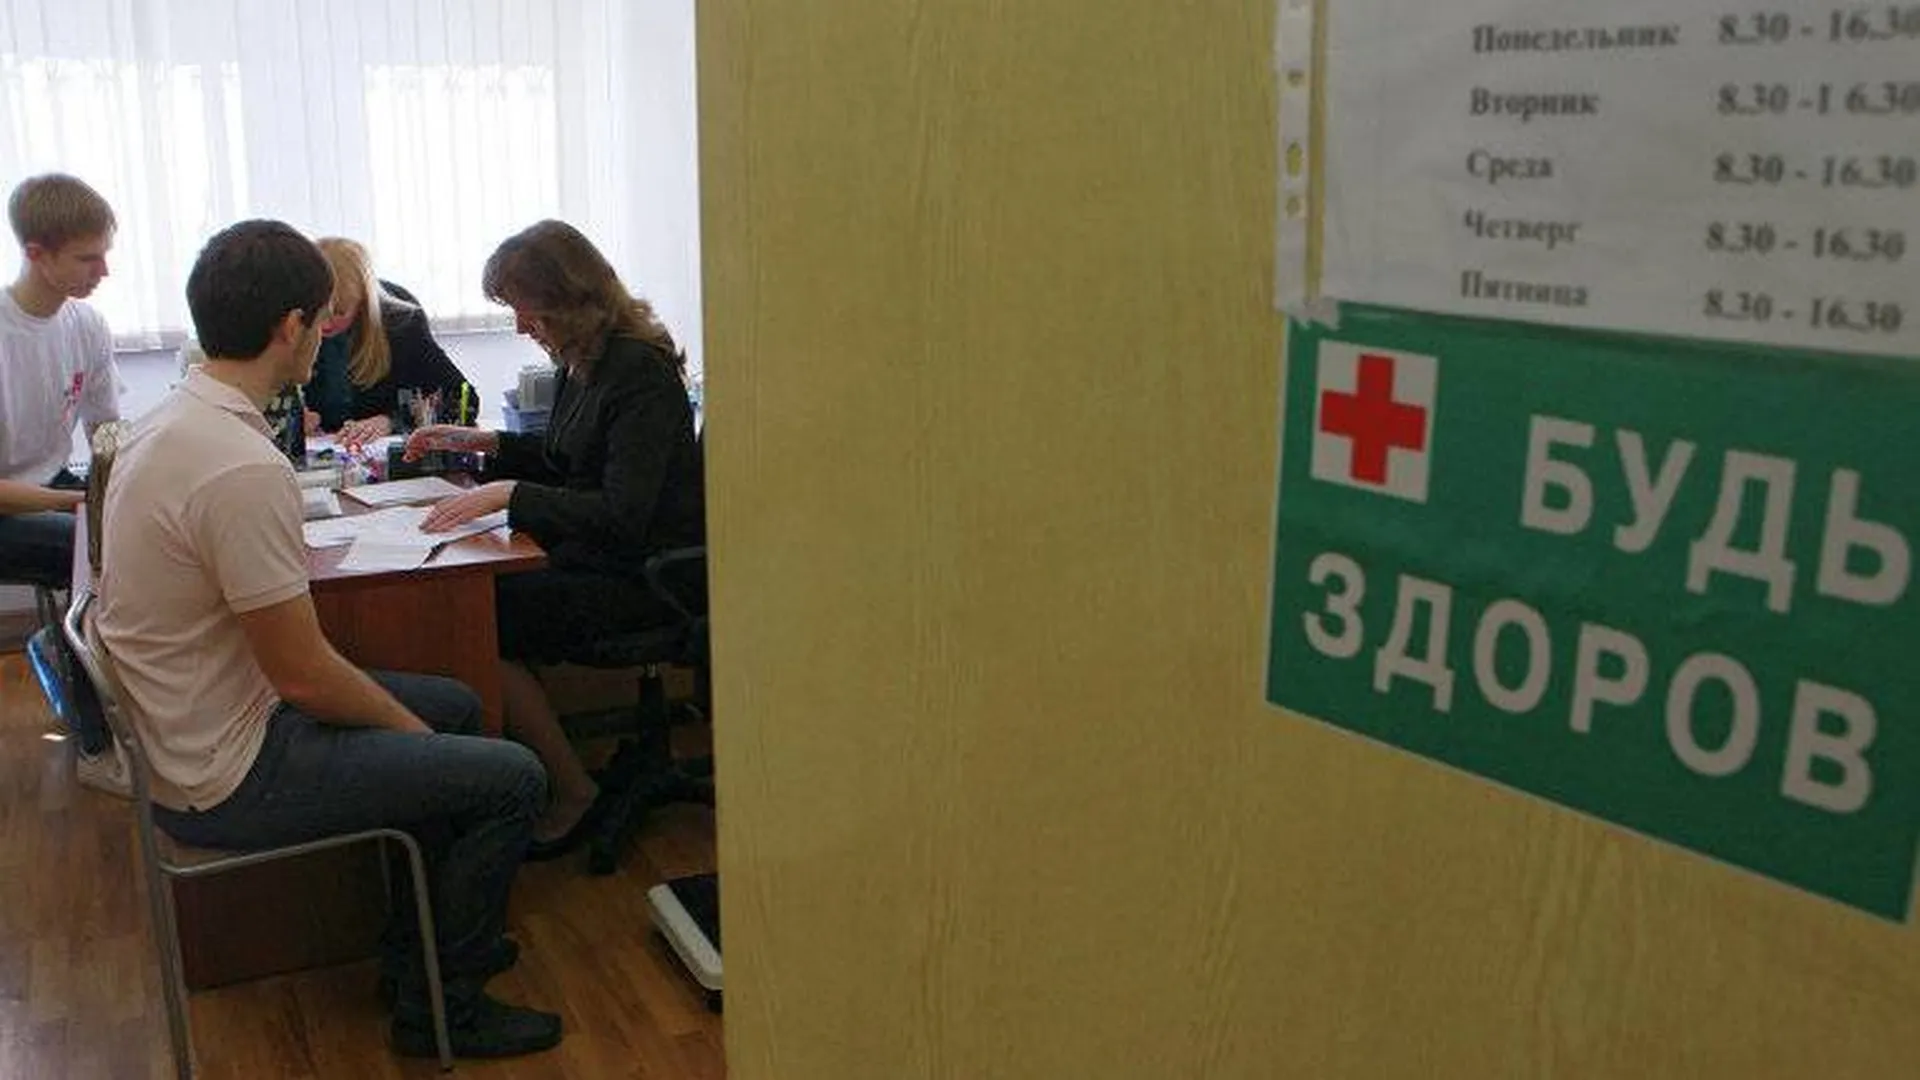 Большие новости 11 октября. Тесты на курение для подростков, поножовщина в школе Дагестана, Собчак допросят